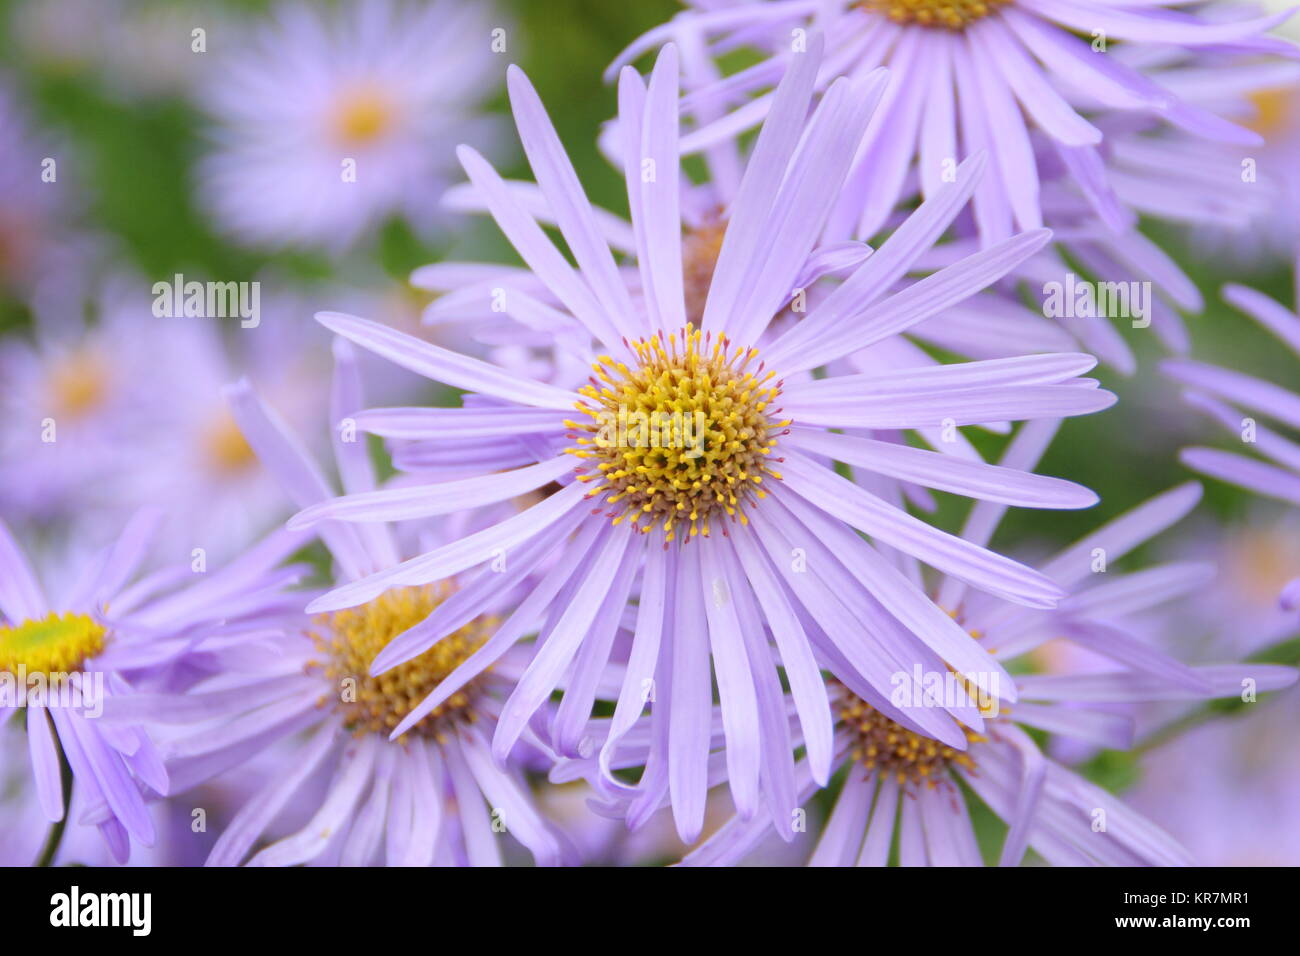 Aster frikarttii 'Monch', chiamato anche Aster amellus 'Monch', fioritura in frontiera di un giardino inglese in settembre, REGNO UNITO Foto Stock